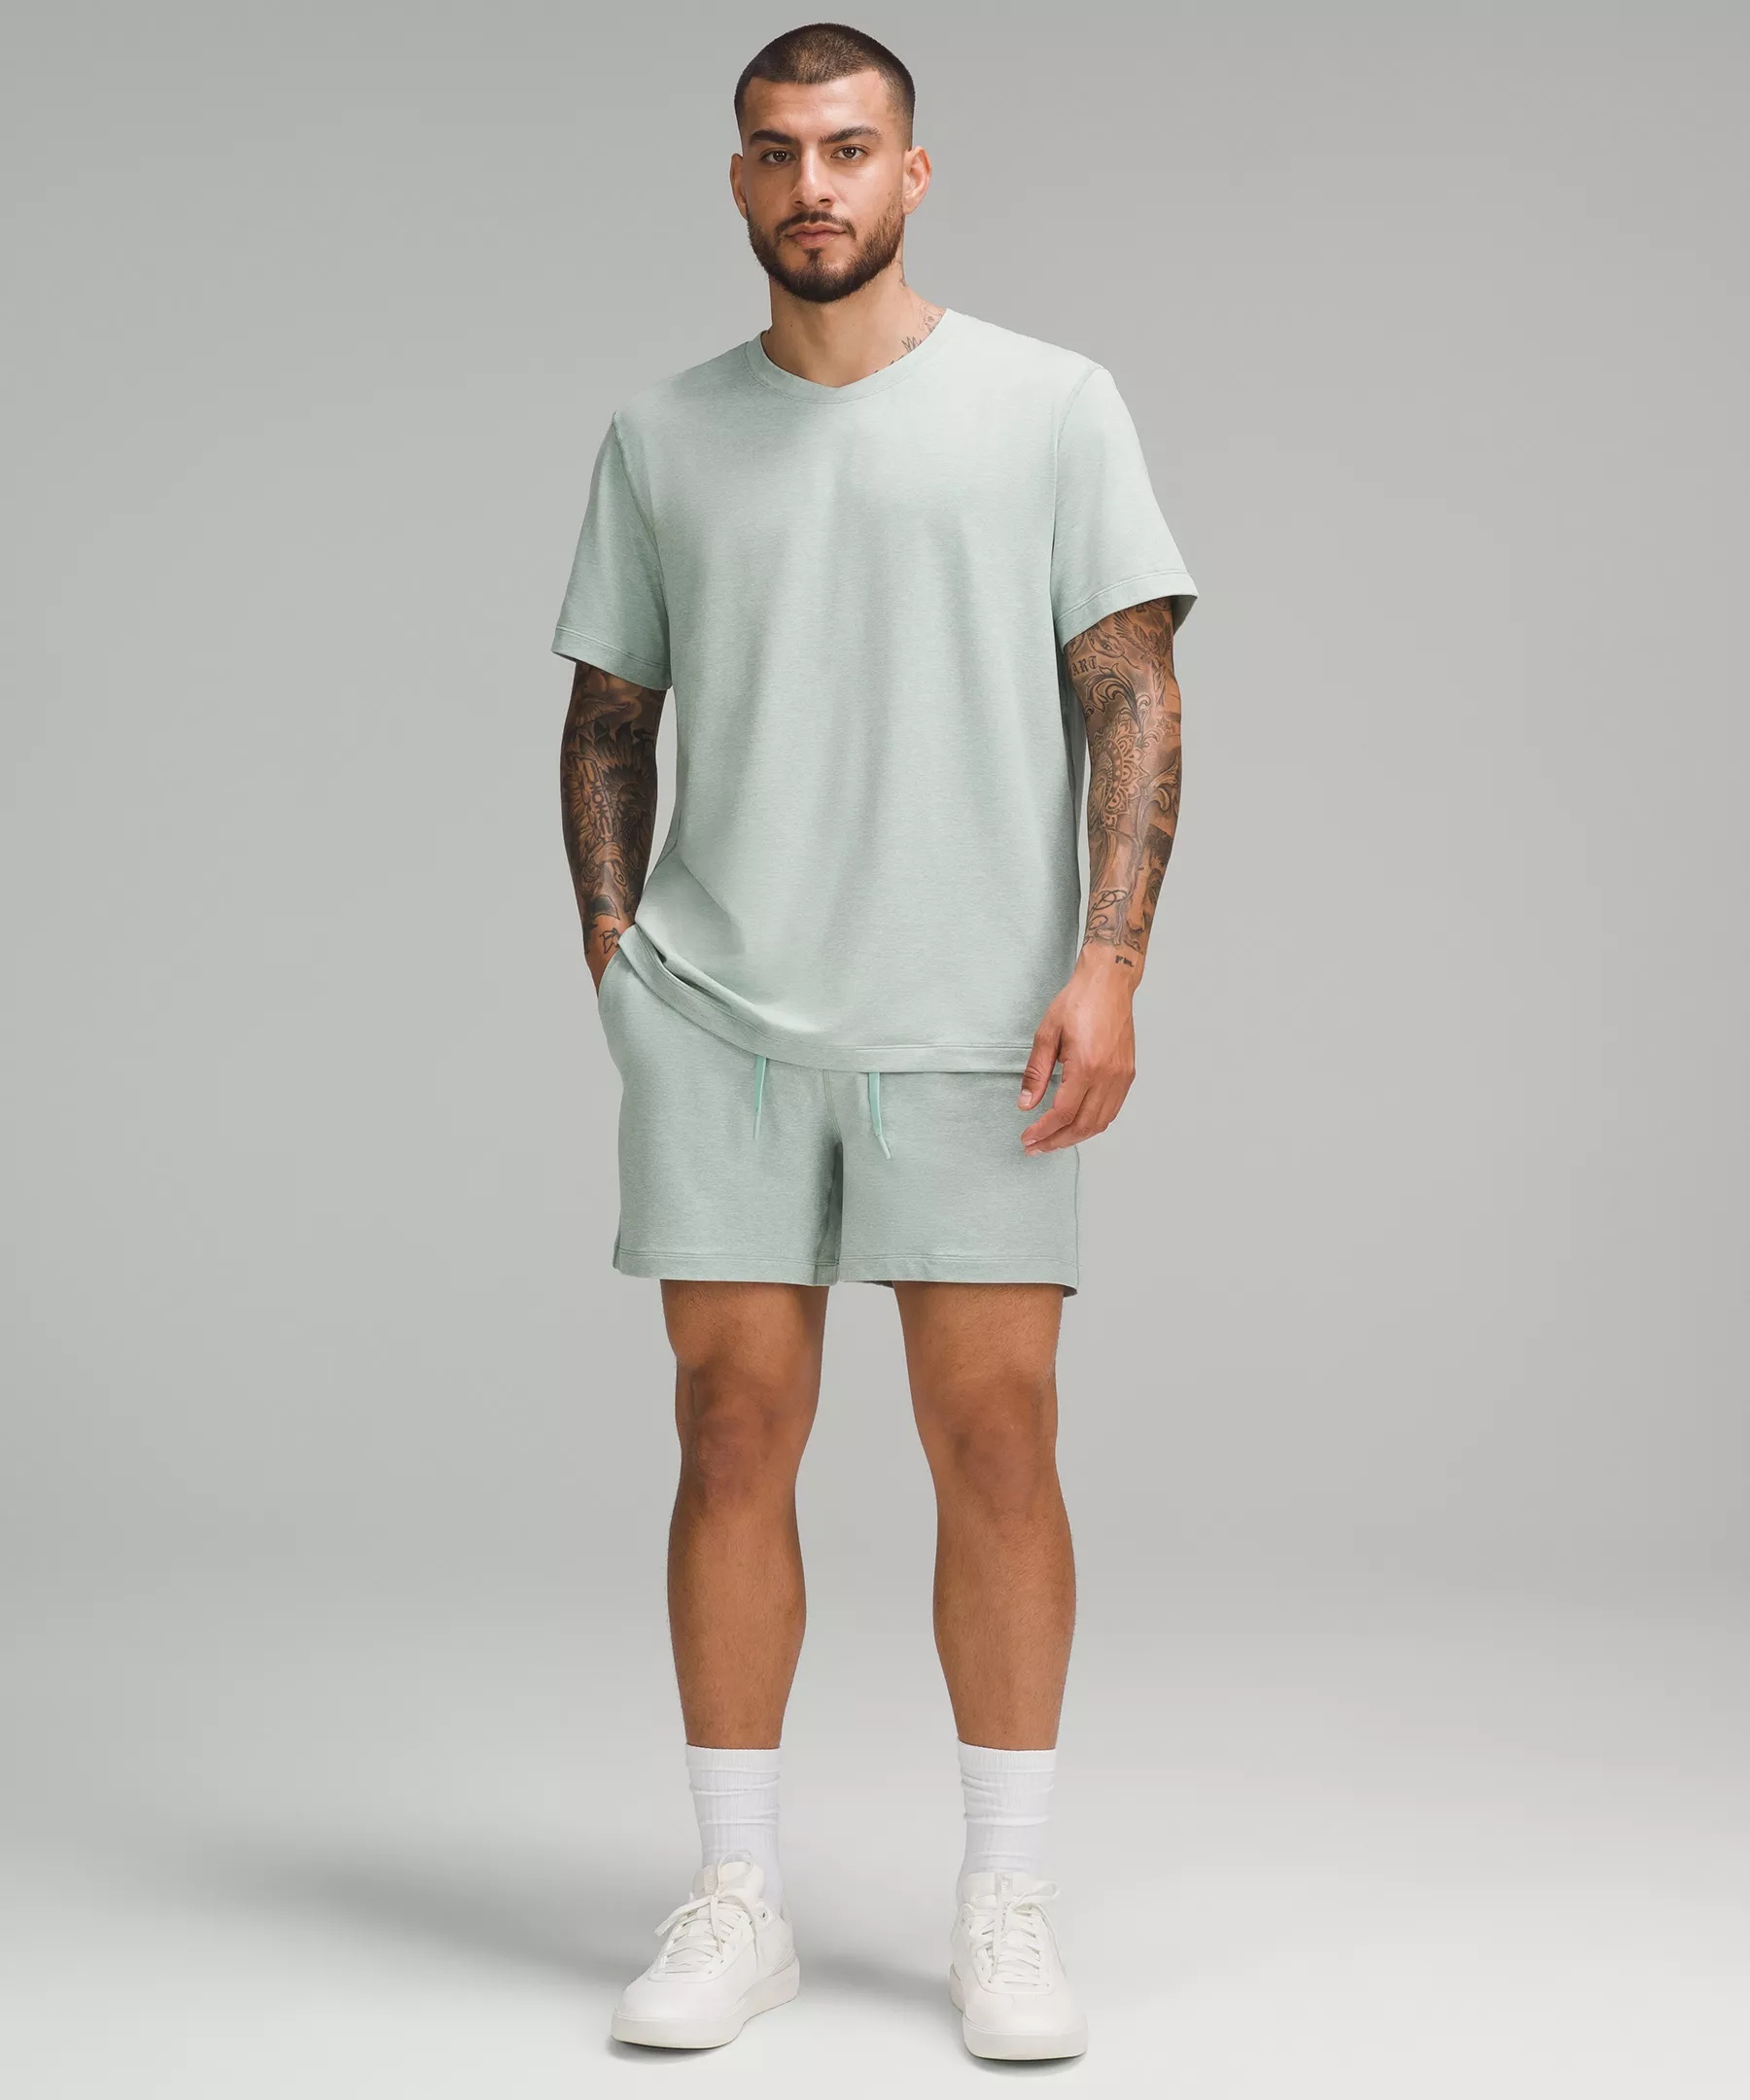 Soft Jersey Short-Sleeve Shirt - 2